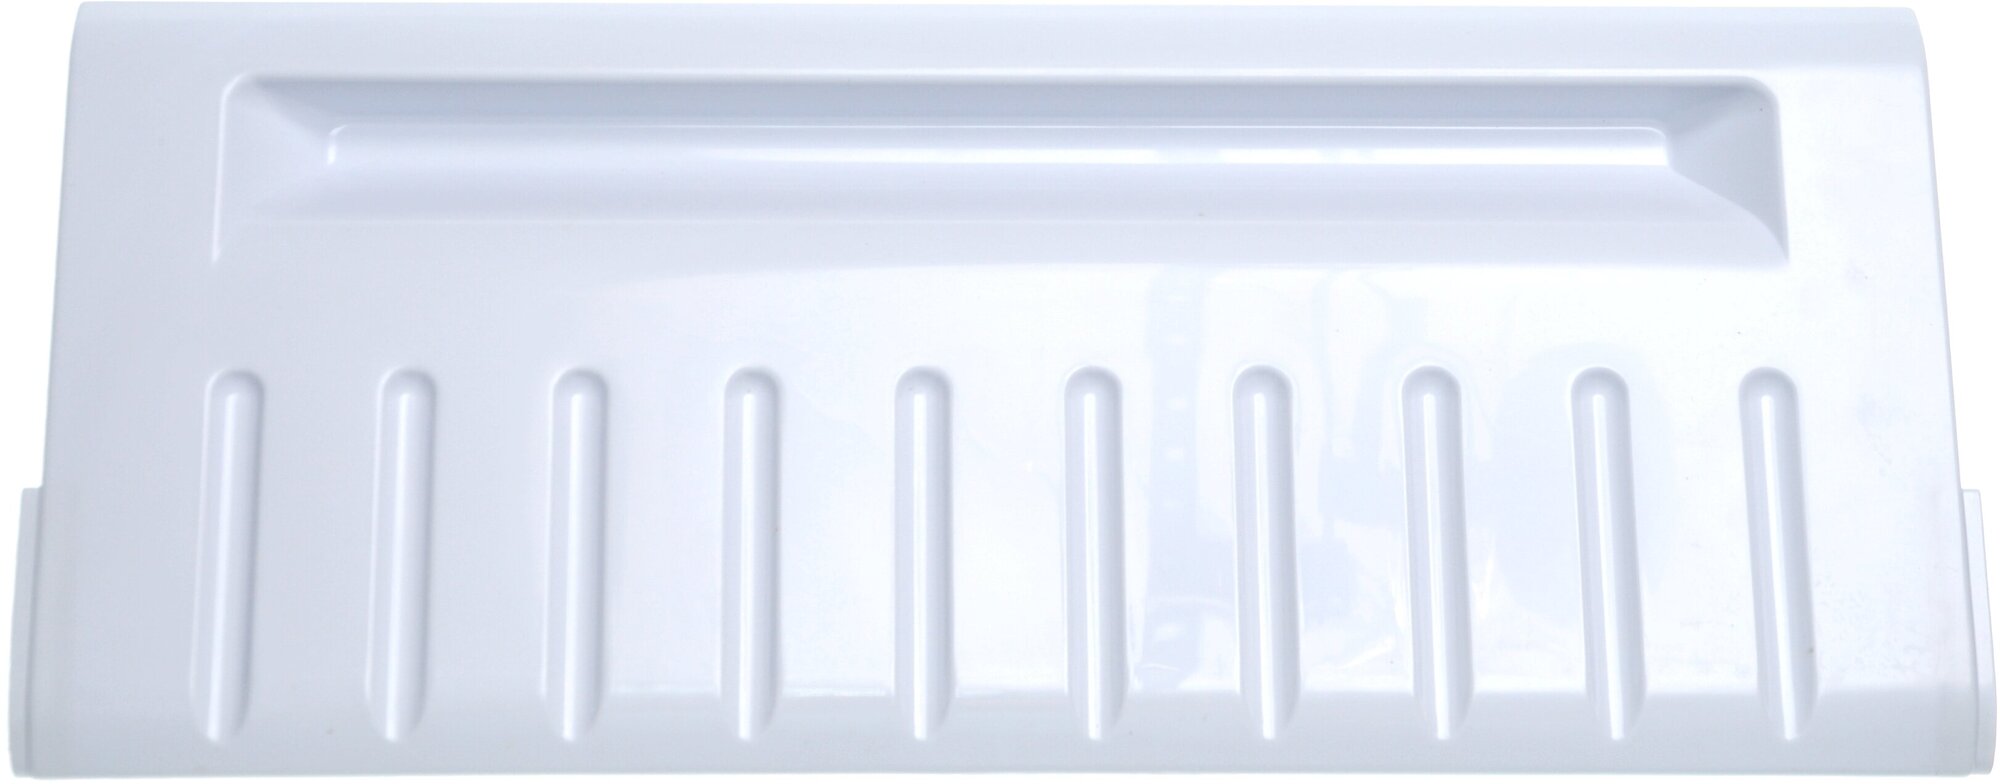 Панель откидная (белая, широкая) холодильника Stinol, Indesit, Ariston